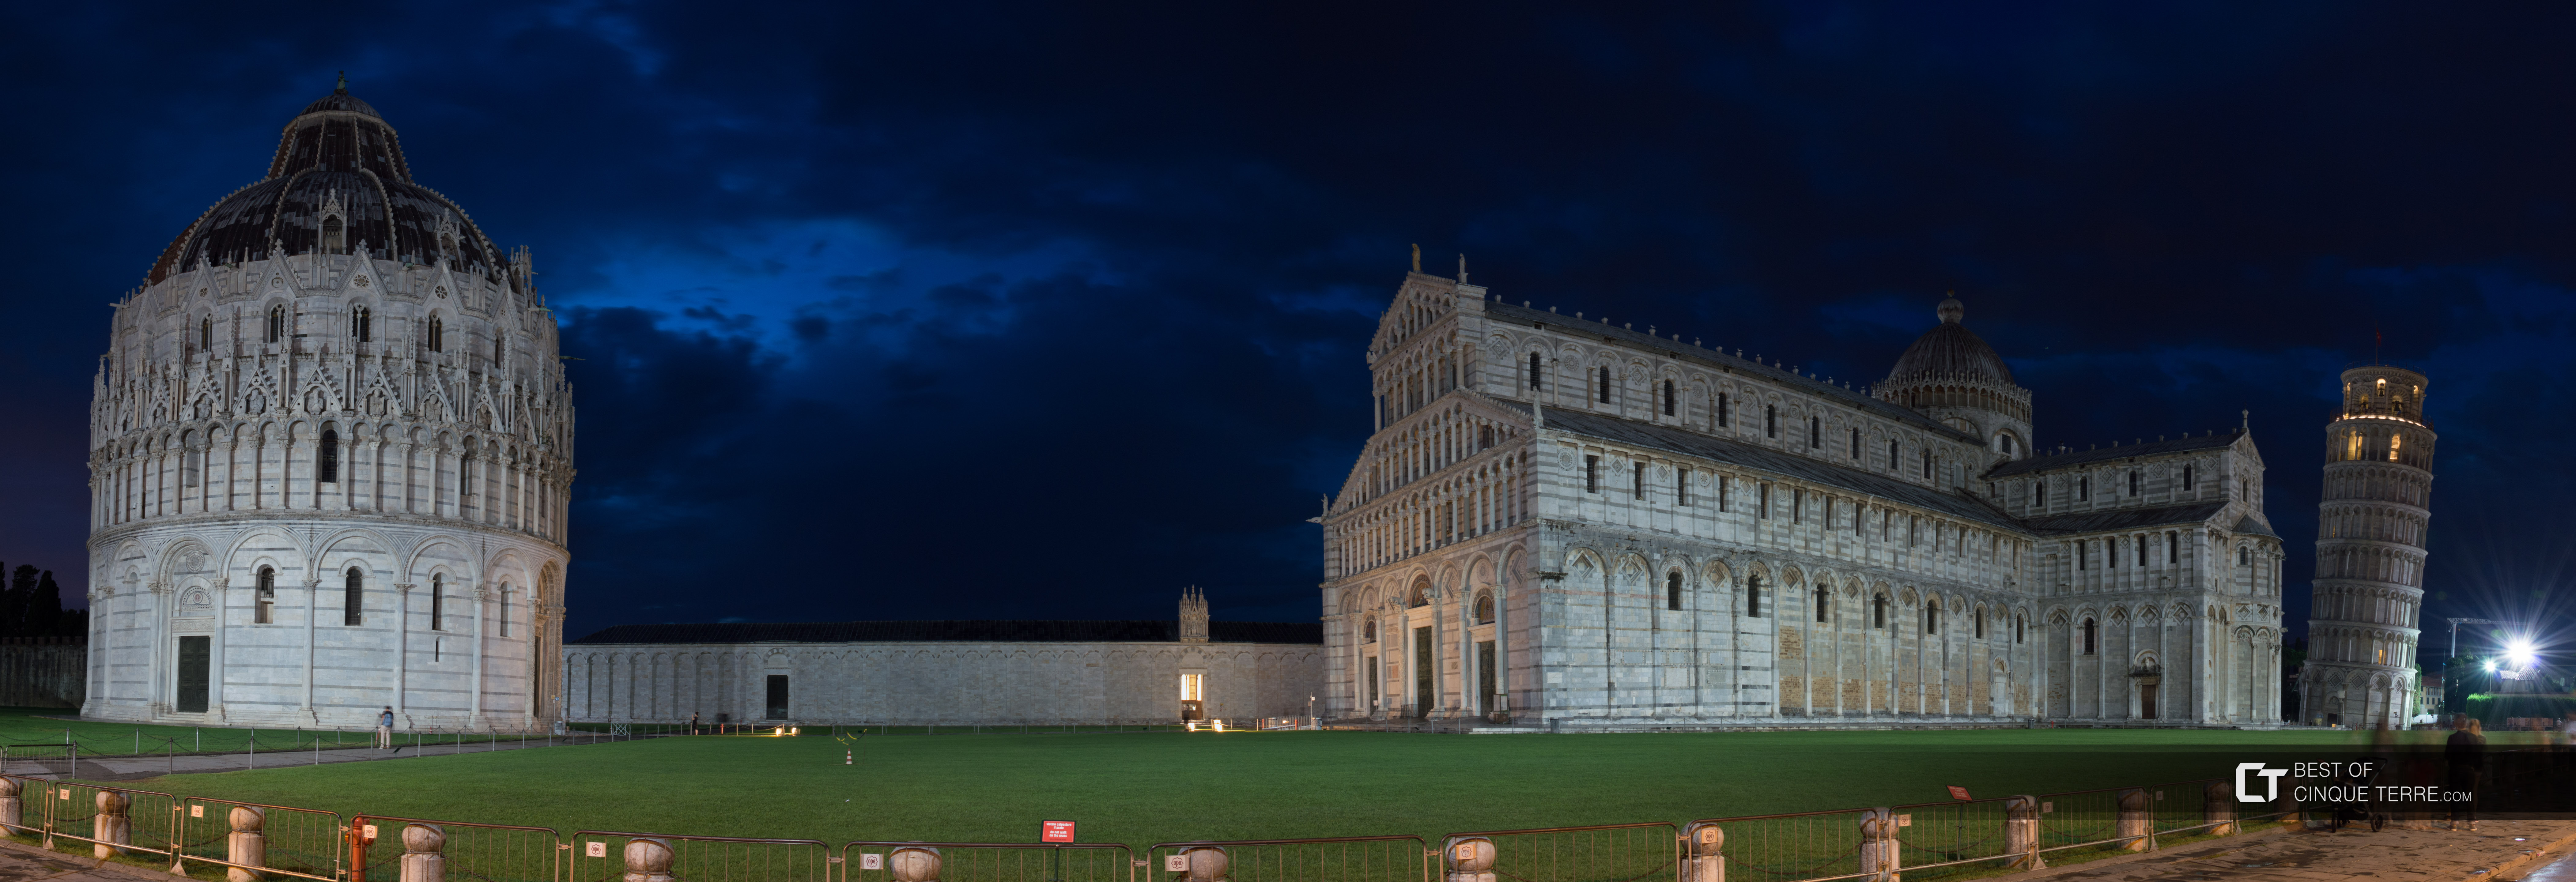 Der Platz der Wunder, nachts, Pisa, Italien